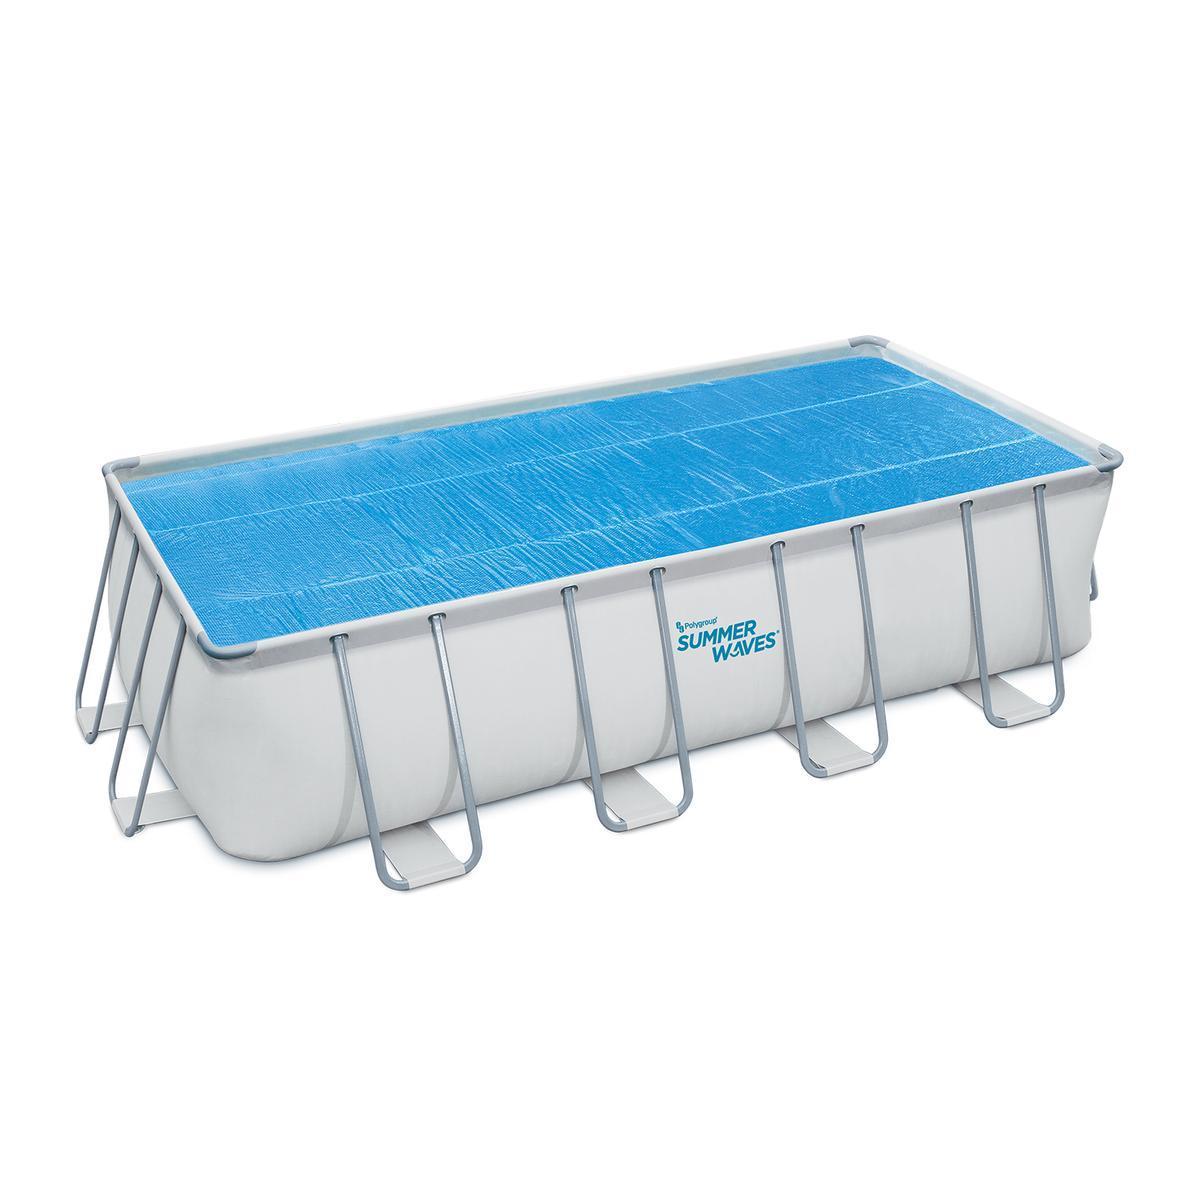 Bâche solaire pour piscine tubulaire rectangulaire - 396 x 213 cm - Bleu - SUMMER WAVES